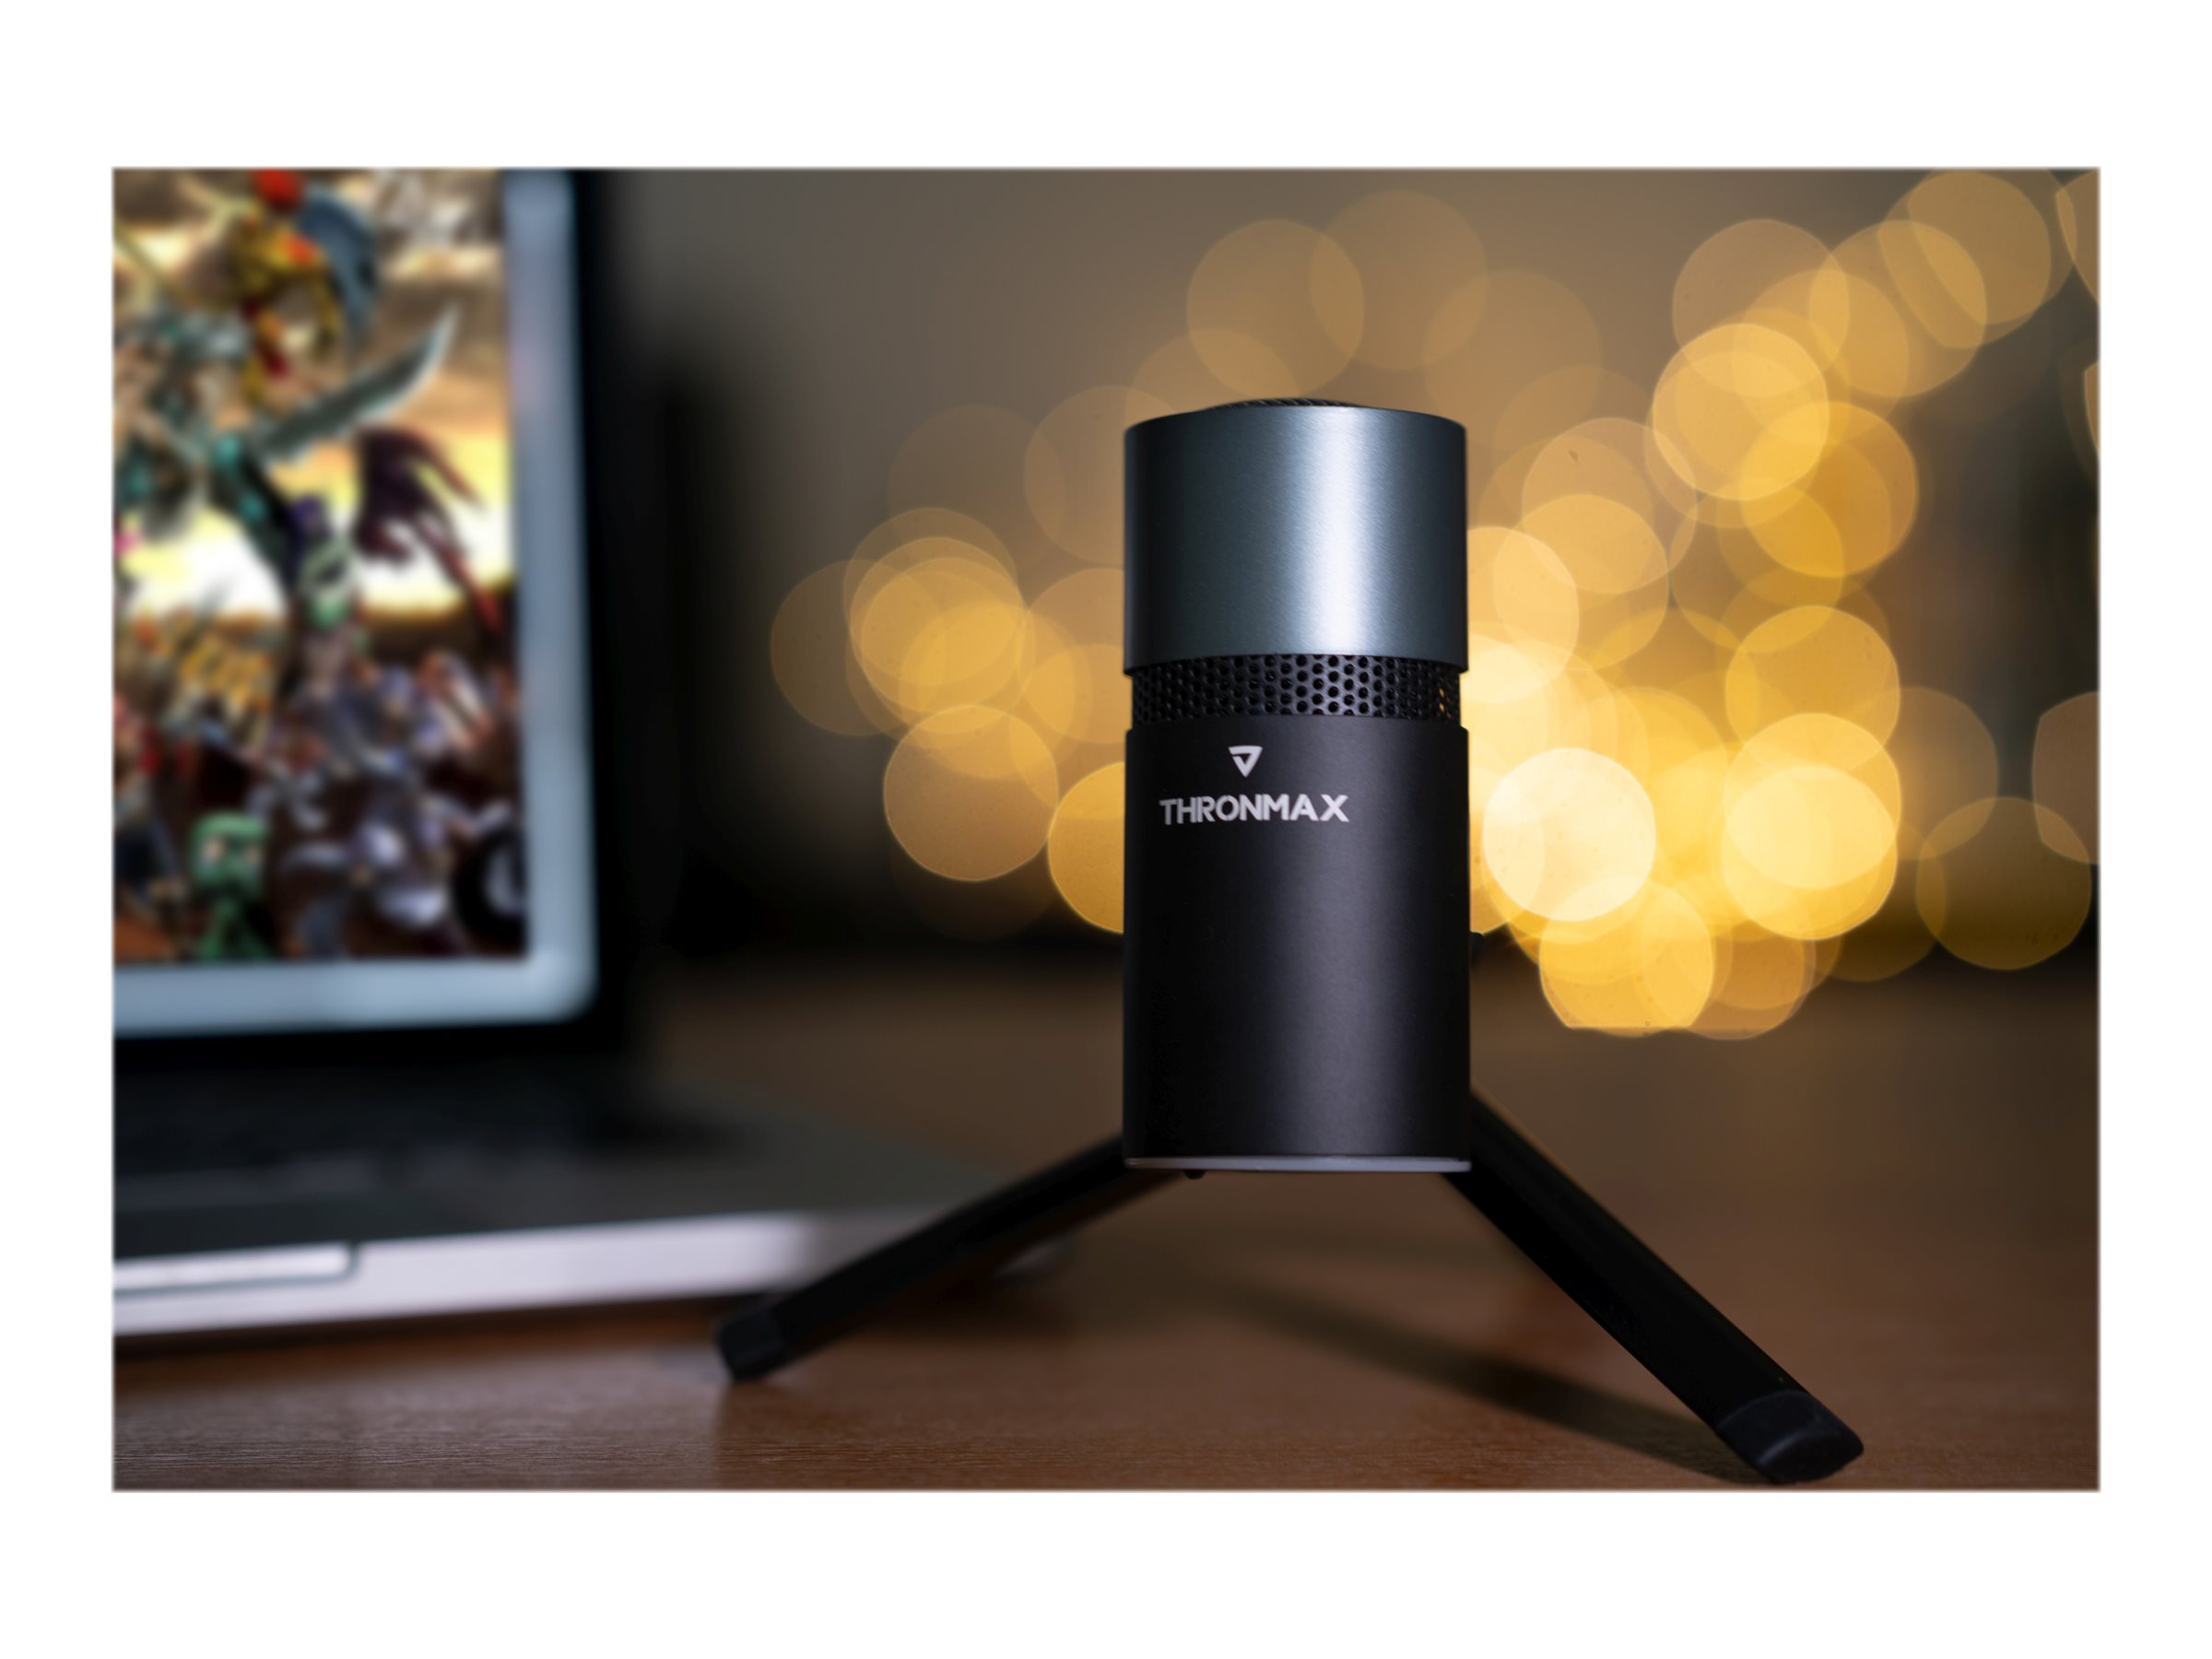 売れ済卸値 Thronmax M8 Pulse Cardioid Condenser USB Microphone， Black  テレビ、オーディオ、カメラ